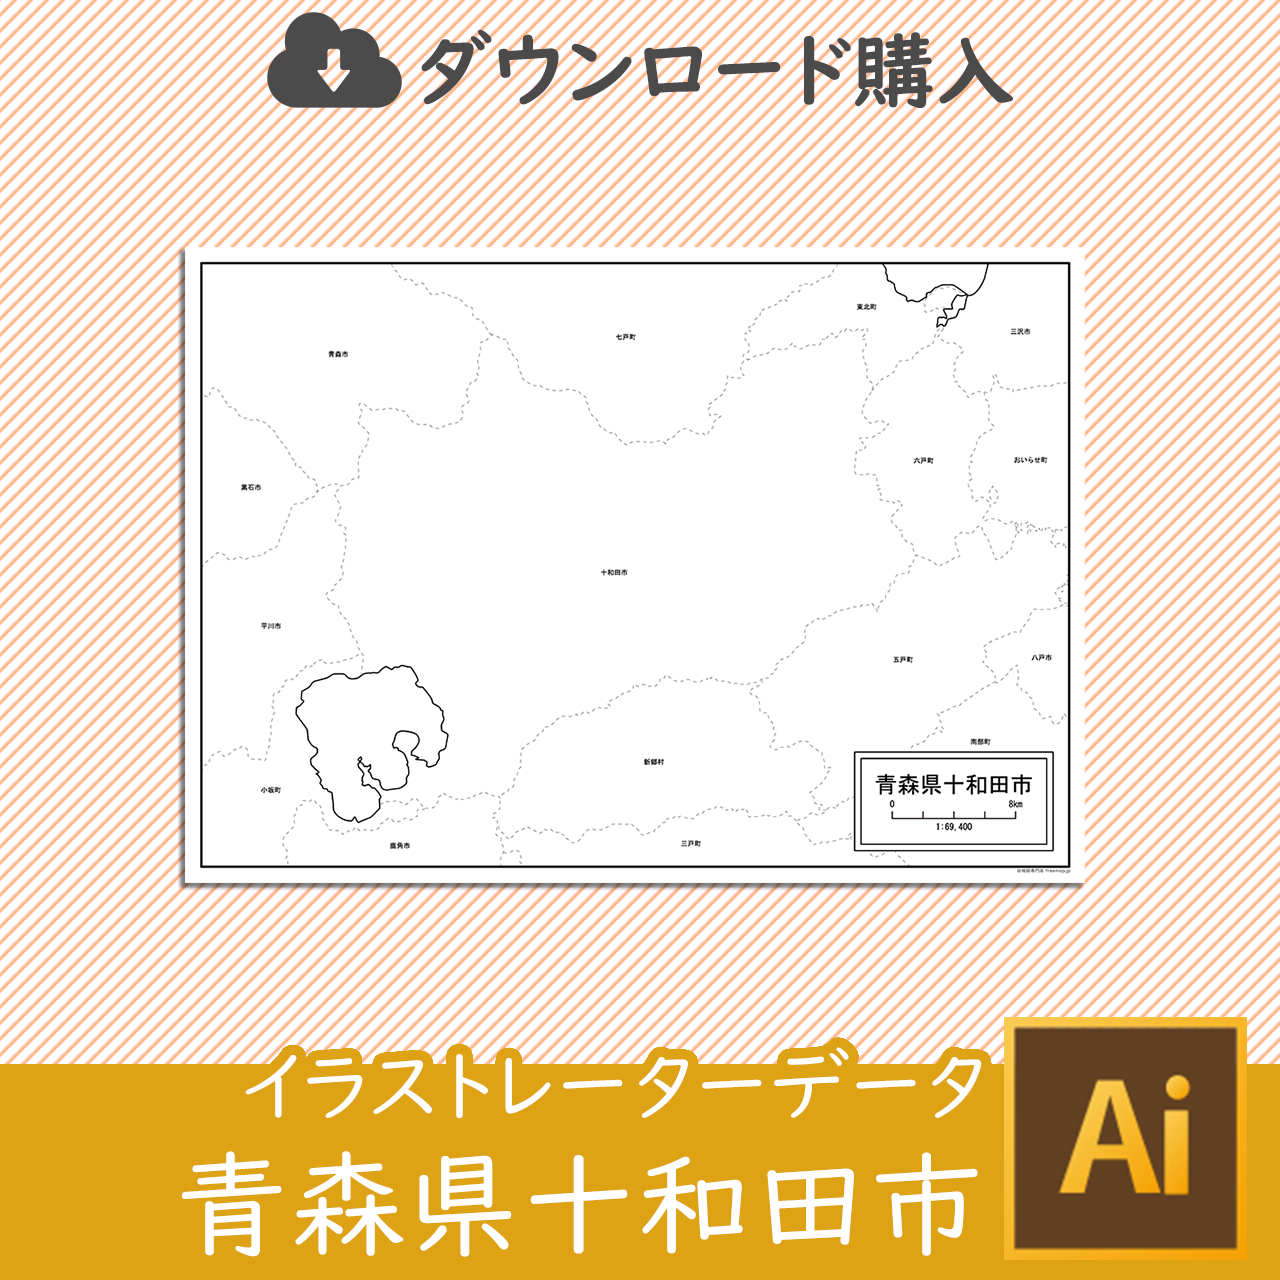 十和田市のaiデータのサムネイル画像